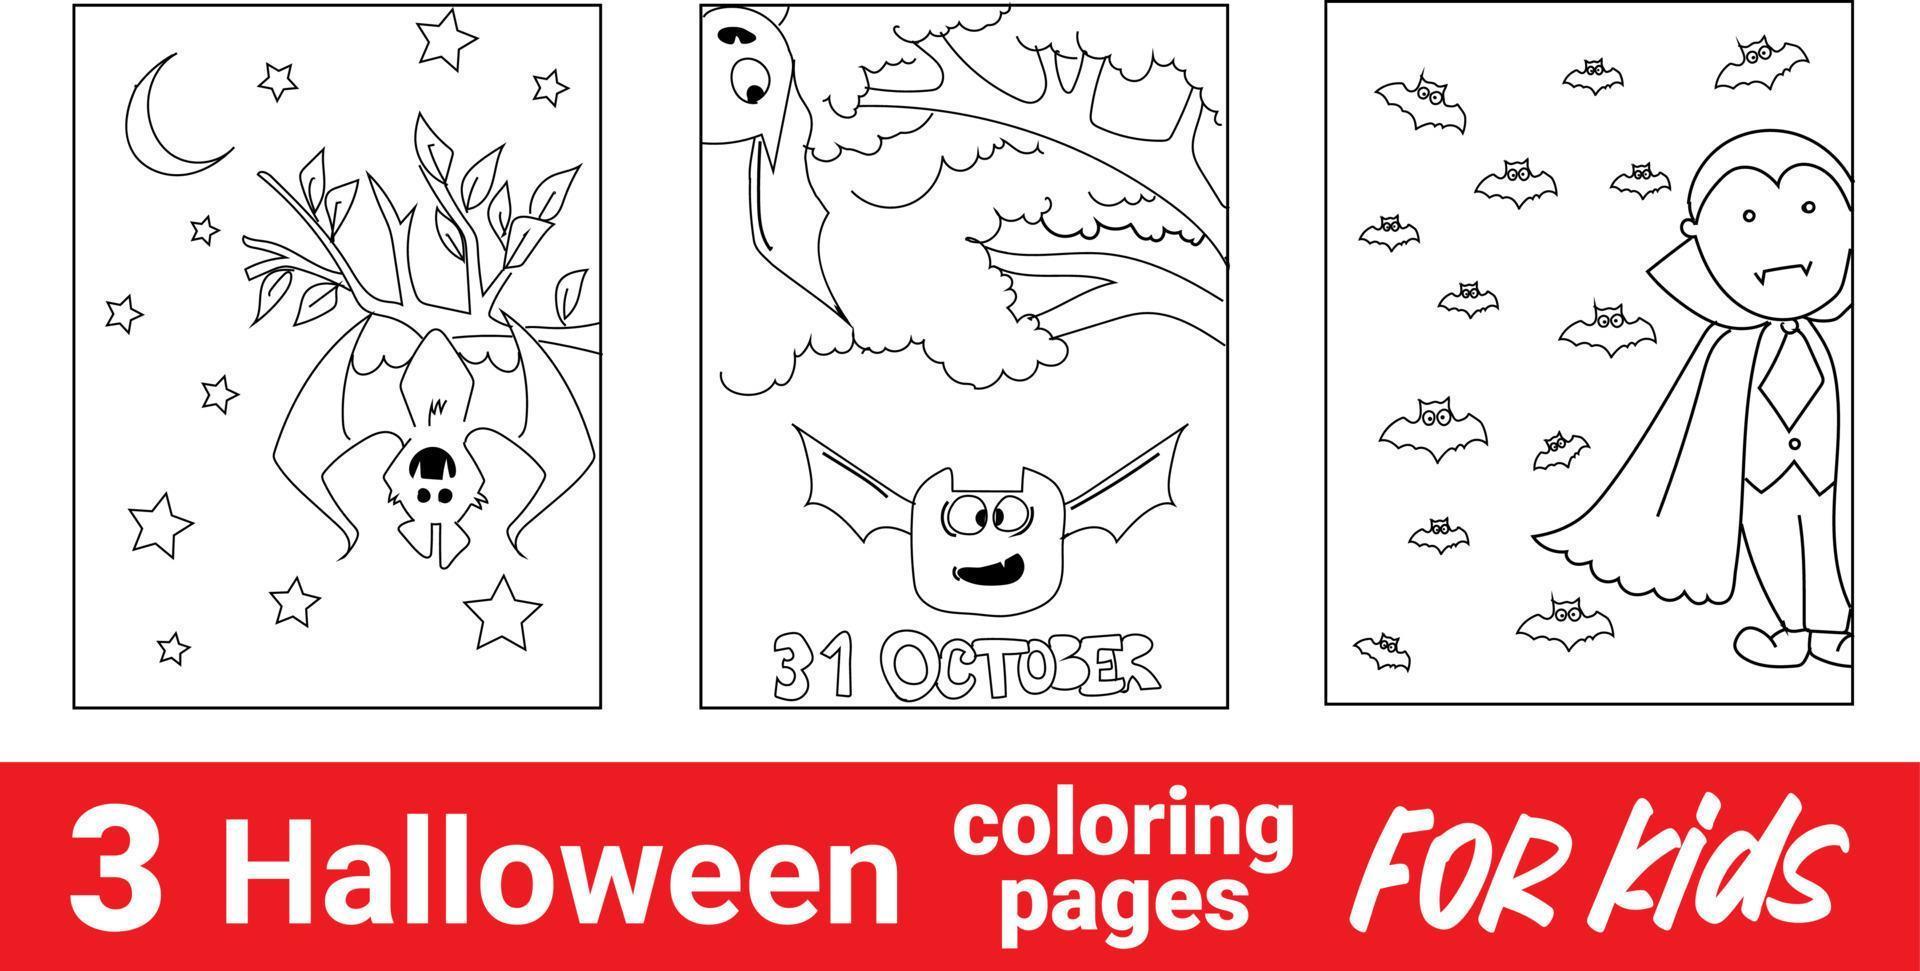 illustration vectorielle de maison hantée en noir et blanc. livre de coloriage d'halloween. citrouille dans le chapeau. vecteur